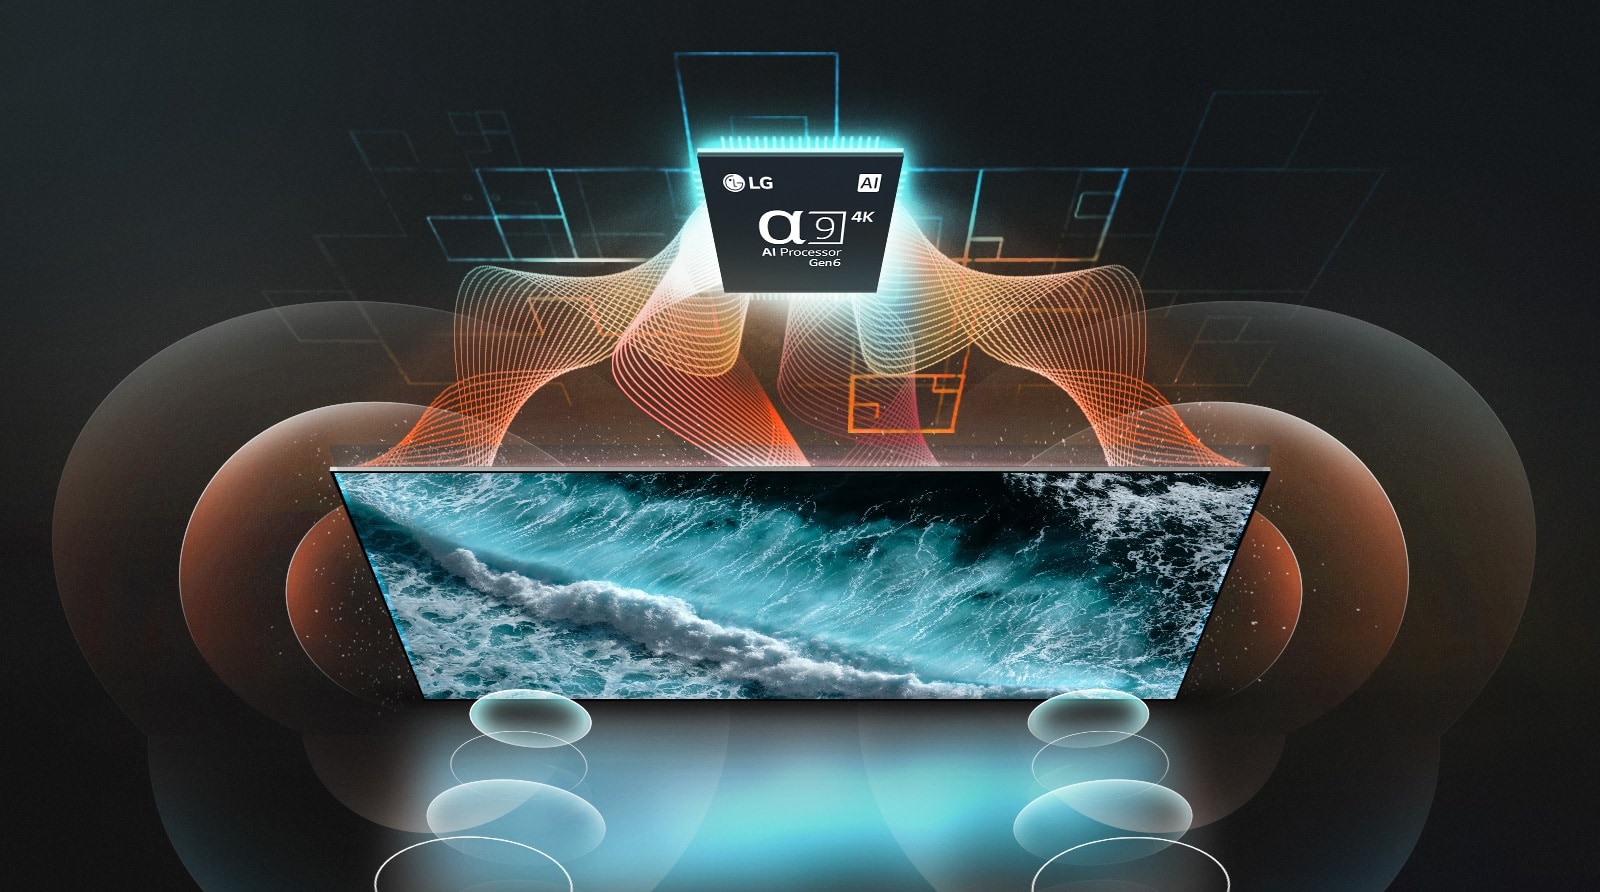 Ujęcie z góry na LG OLED TV oraz α9 AI Processor 4K Gen6. Pomarańczowe i turkusowe fale łączą się z czipem i telewizorem, a na ekranie pojawiają się bąbelki wizualizujące dźwięki emanujące z ekranu. 